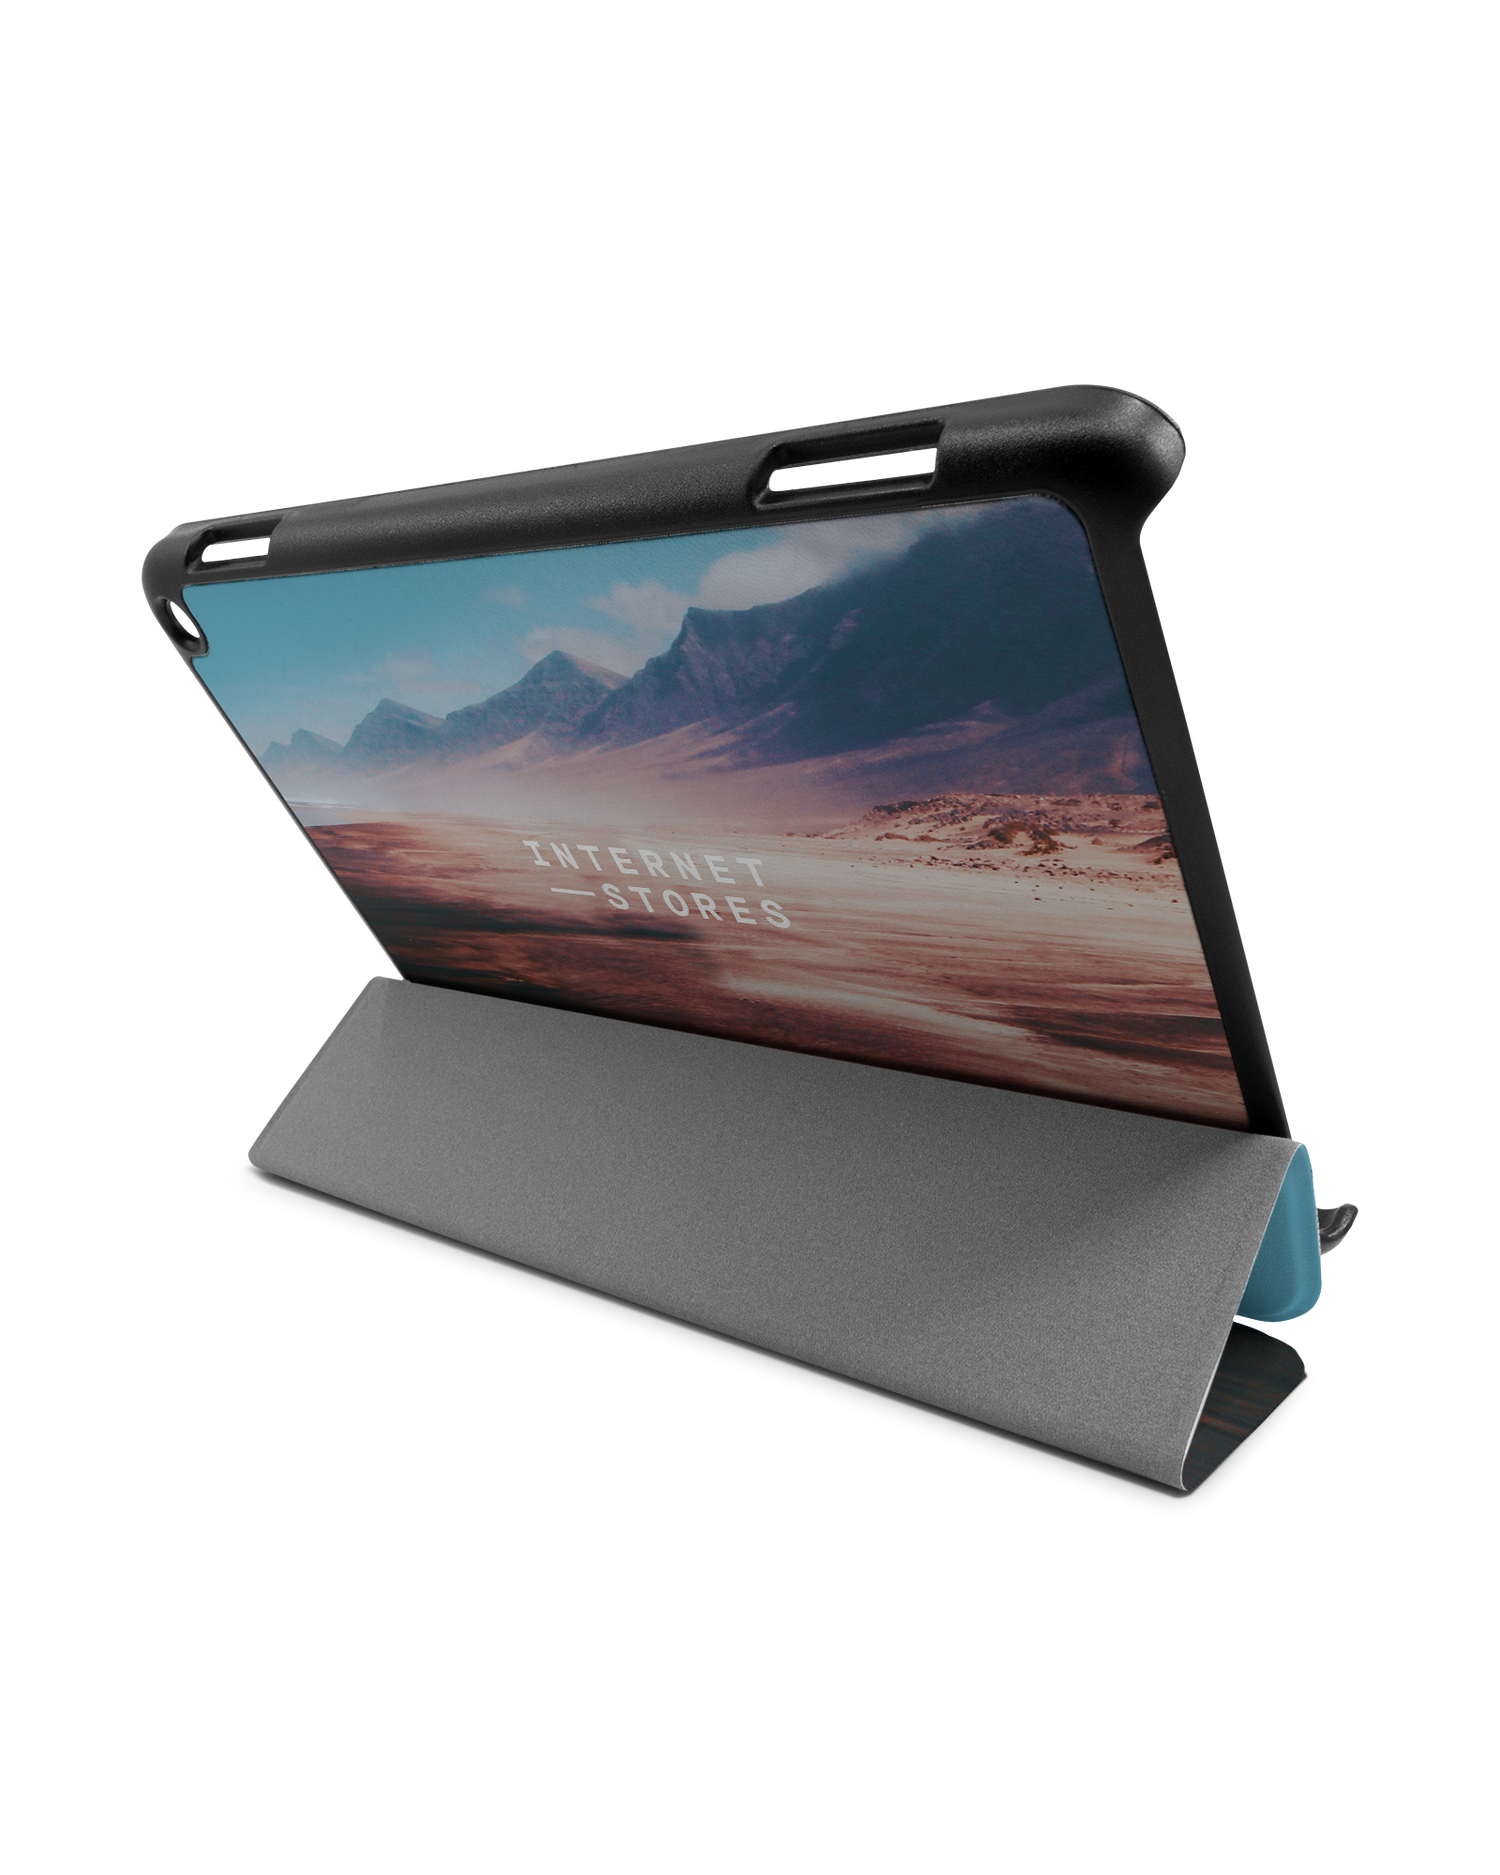 Sky Tablet Smart Case für Amazon Fire HD 8 (2022), Amazon Fire HD 8 Plus (2022), Amazon Fire HD 8 (2020), Amazon Fire HD 8 Plus (2020): Aufgestellt im Querformat